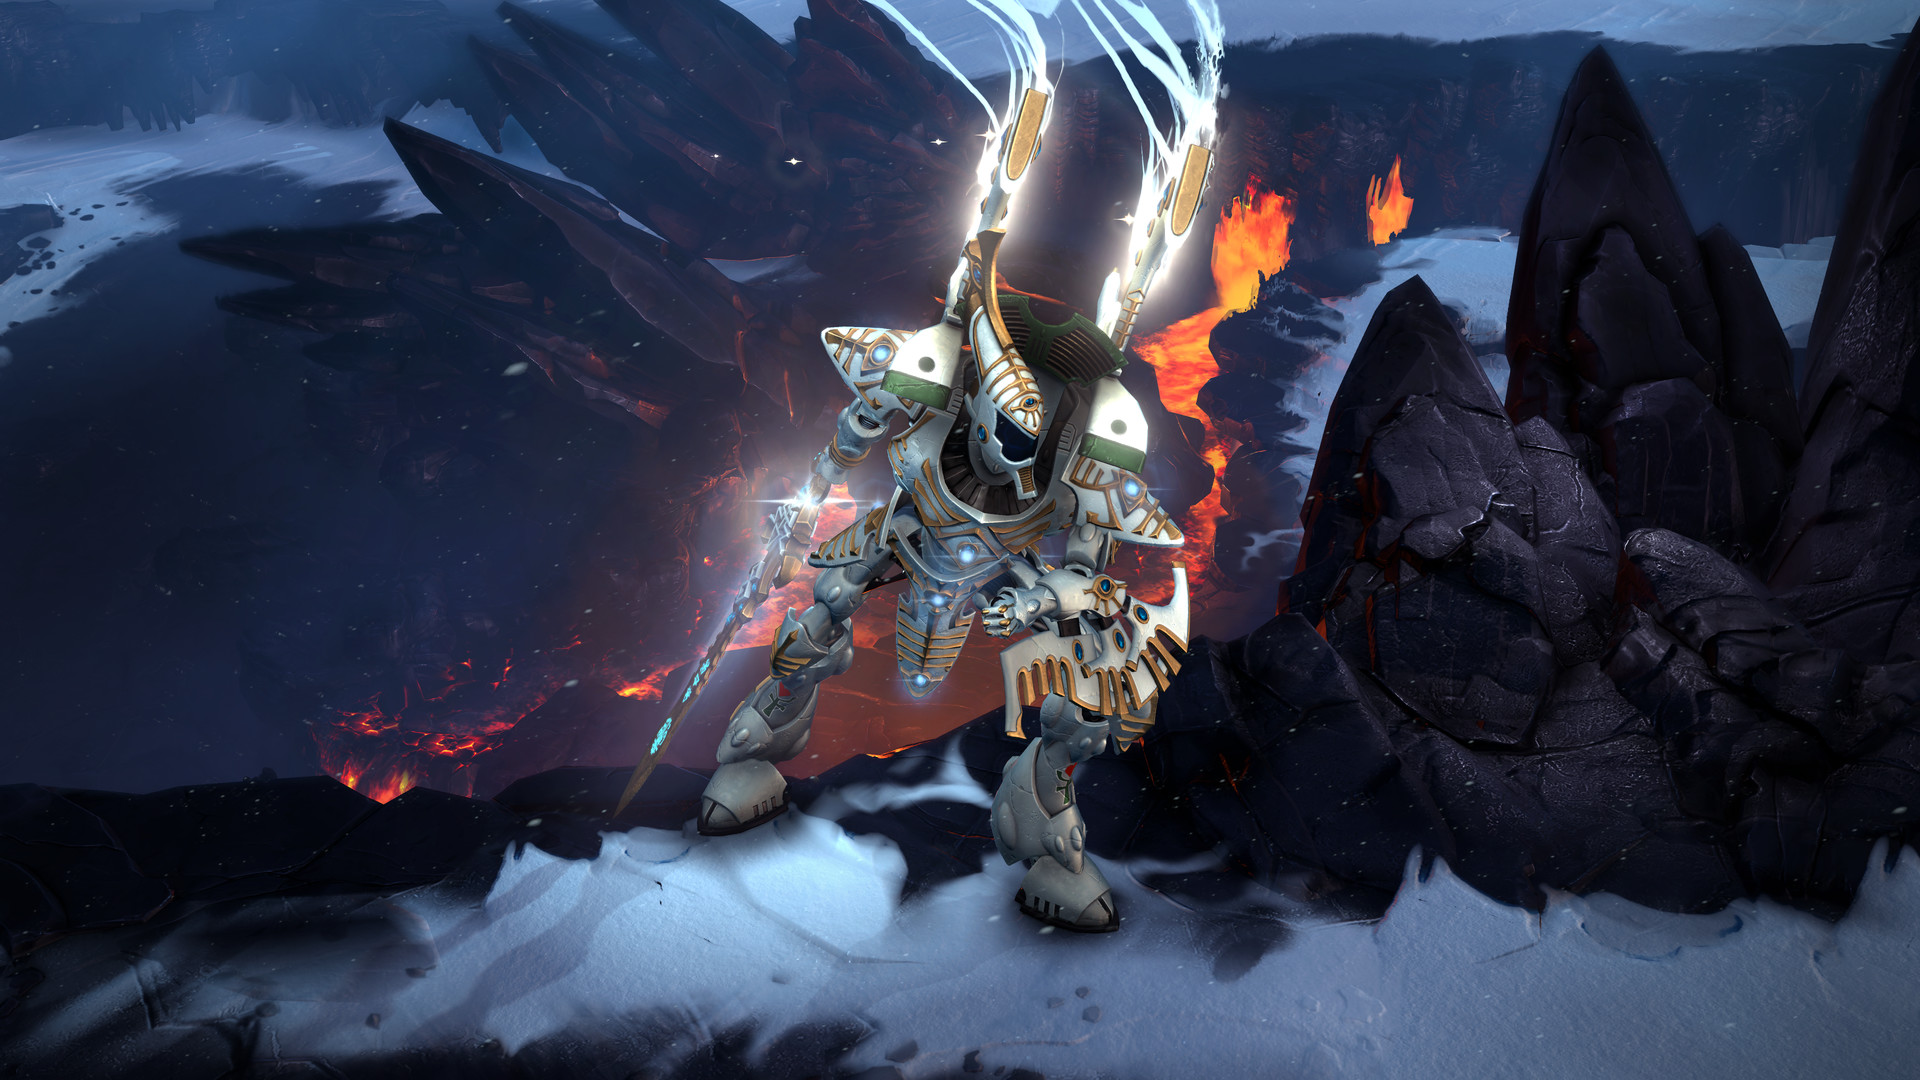 Warhammer 40,000: Dawn of War III Beta (5 Keys) + BONUS